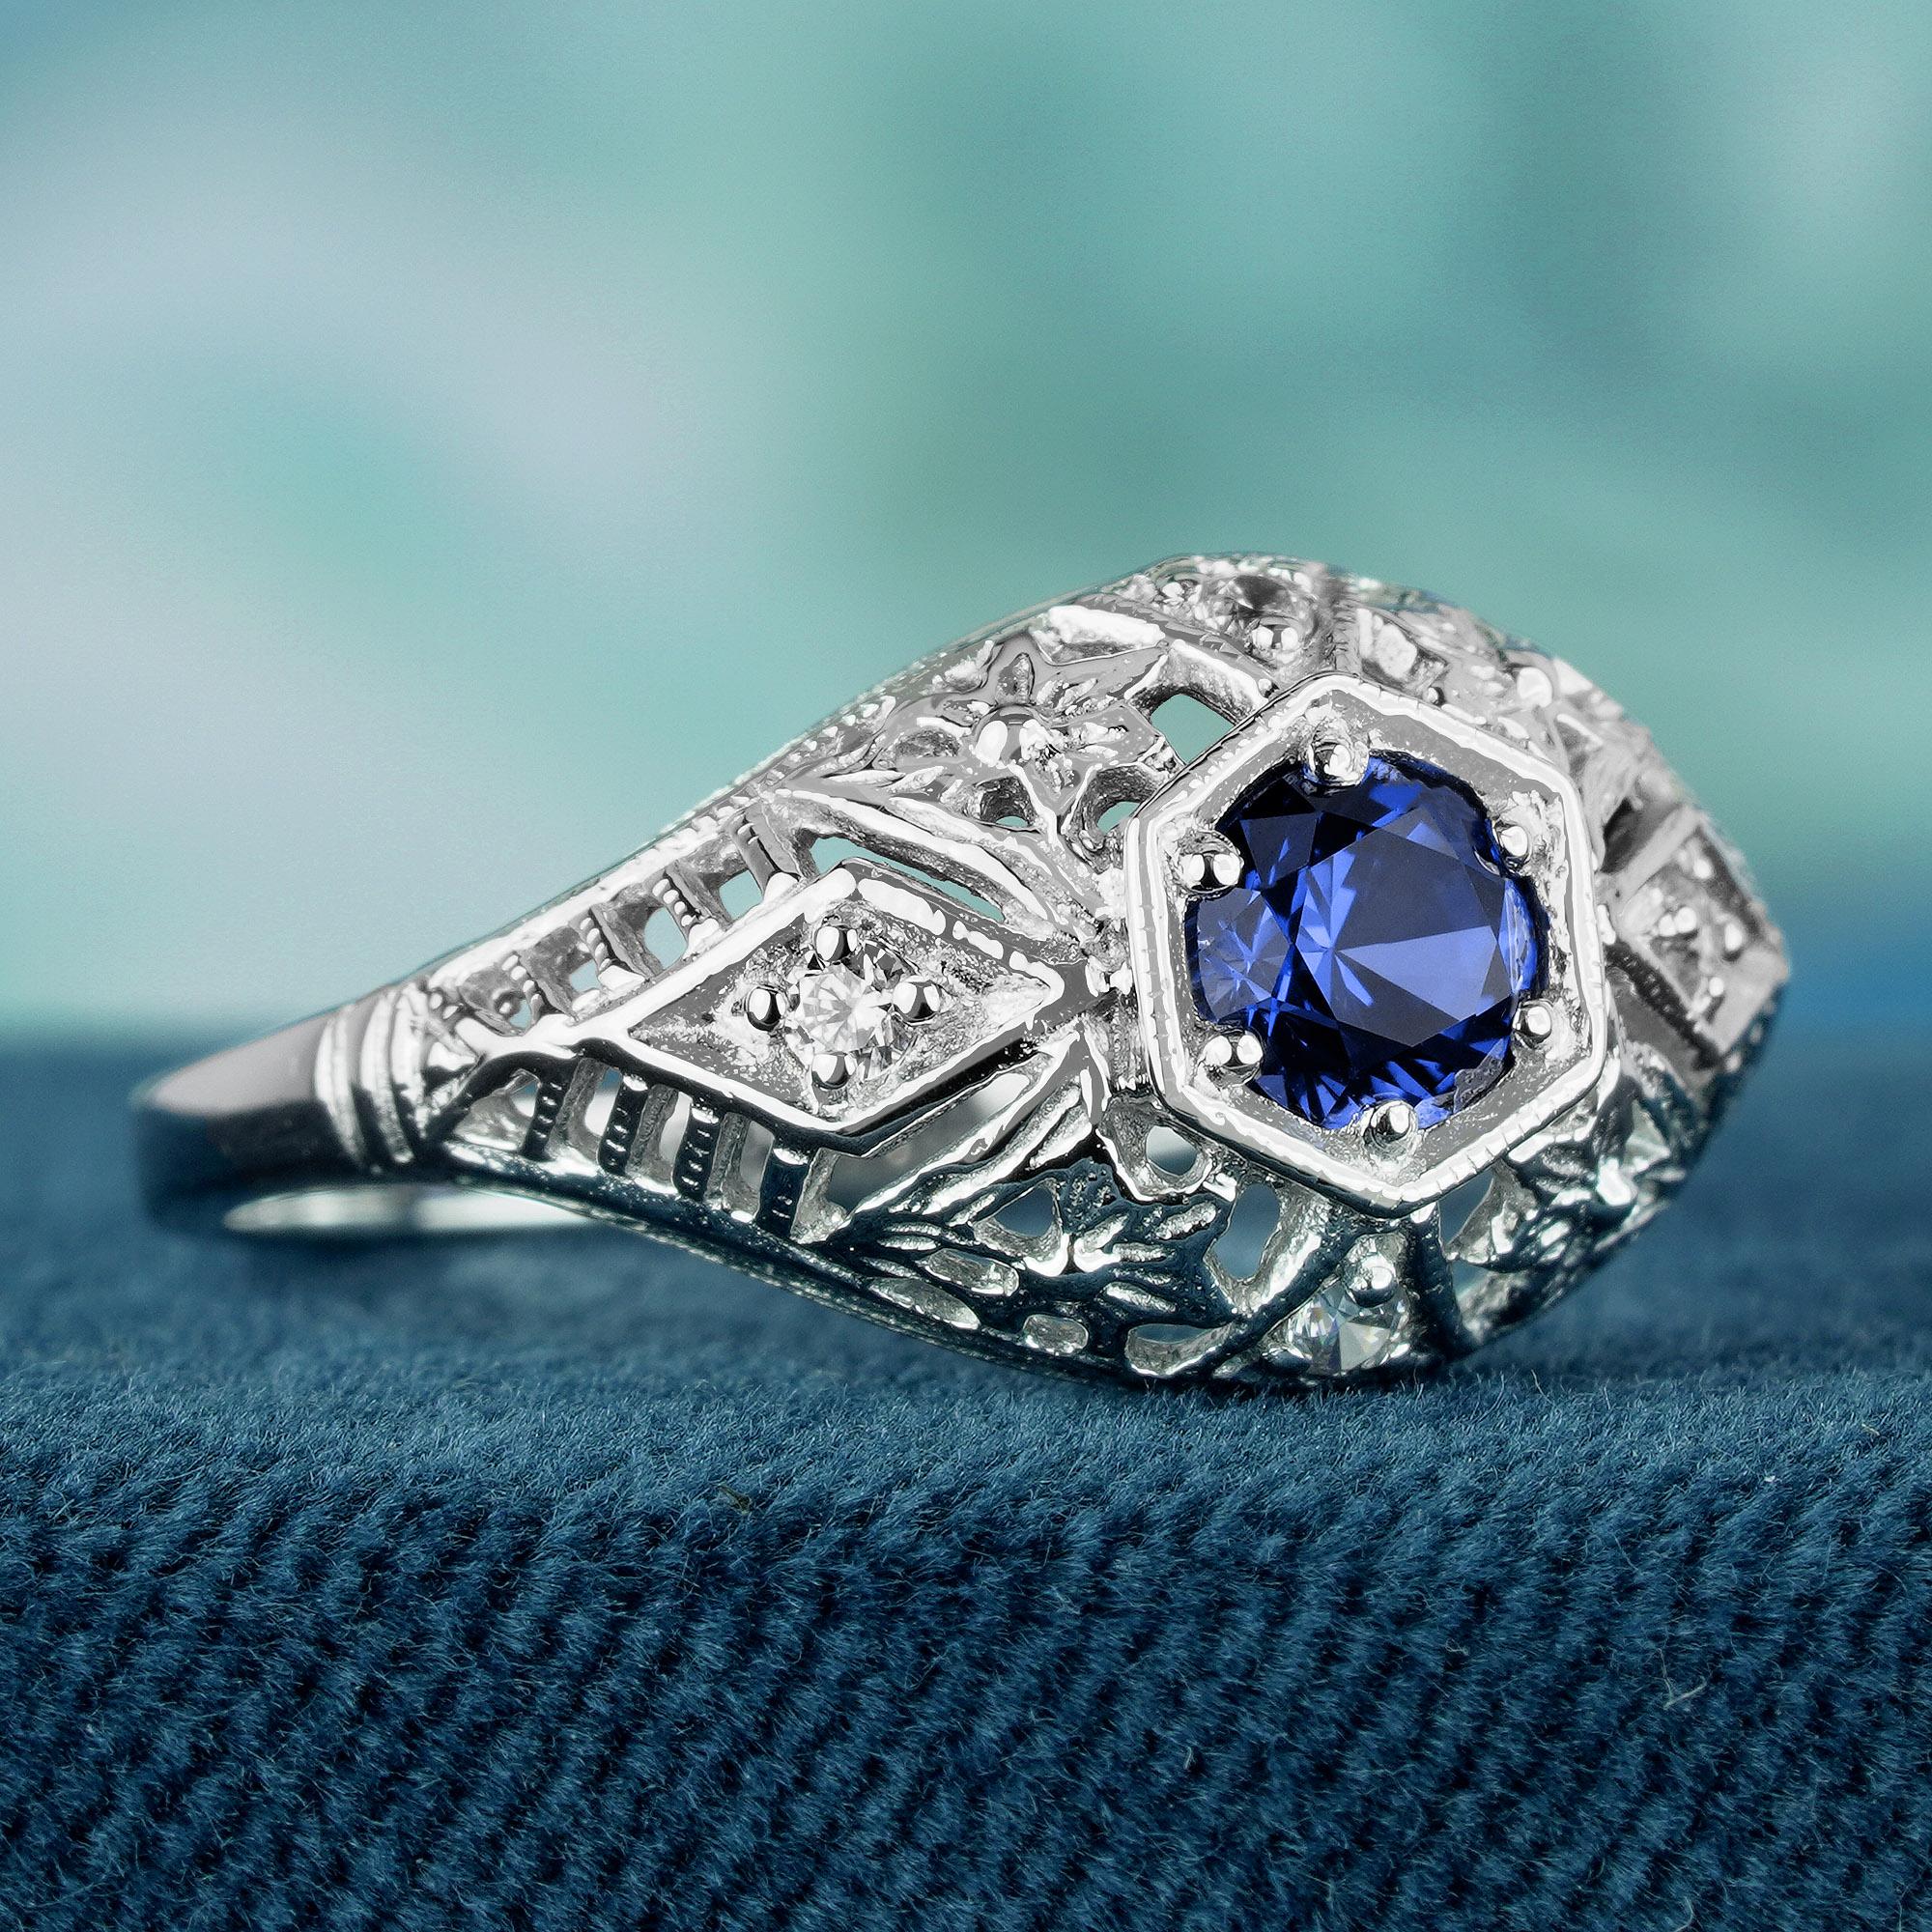 Im Mittelpunkt dieses Rings im Vintage-Stil steht ein atemberaubender blauer Saphir. Der Saphir ist von filigranen Details aus massivem Weißgold umgeben, und mehrere kleine Diamanten verleihen ihm einen Hauch von Funkeln. Der Ring erinnert mit